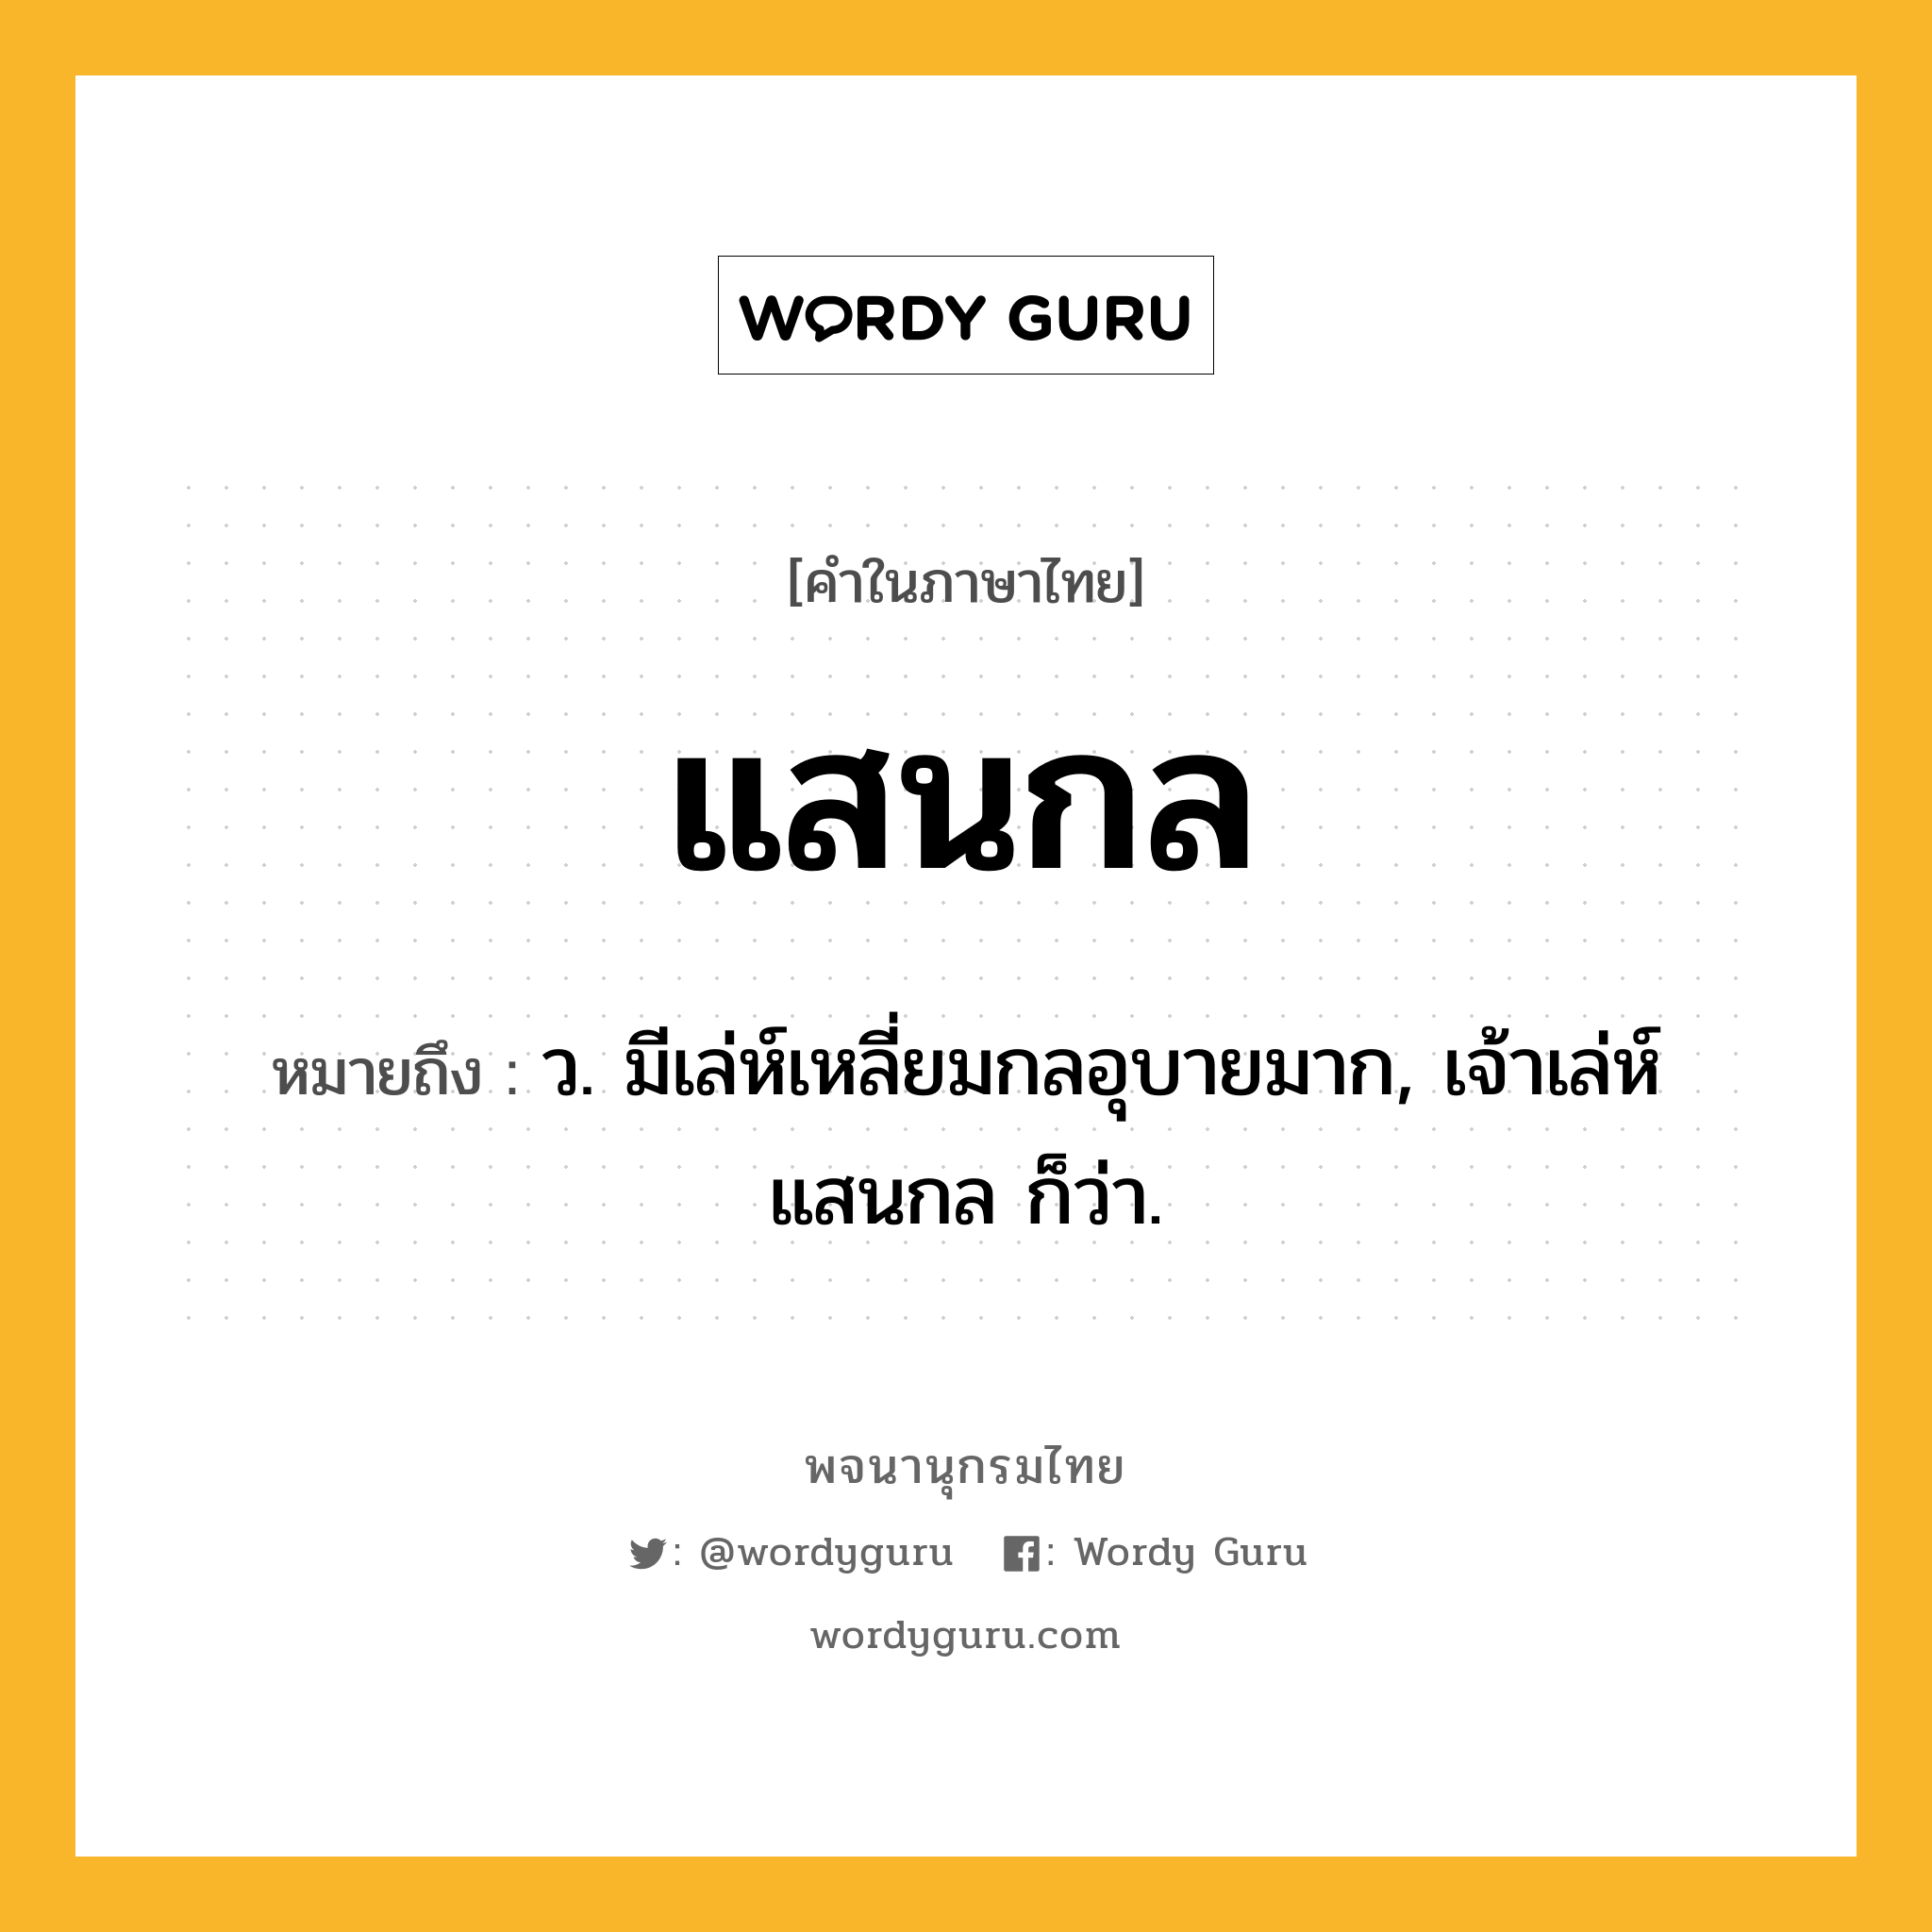 แสนกล หมายถึงอะไร?, คำในภาษาไทย แสนกล หมายถึง ว. มีเล่ห์เหลี่ยมกลอุบายมาก, เจ้าเล่ห์แสนกล ก็ว่า.